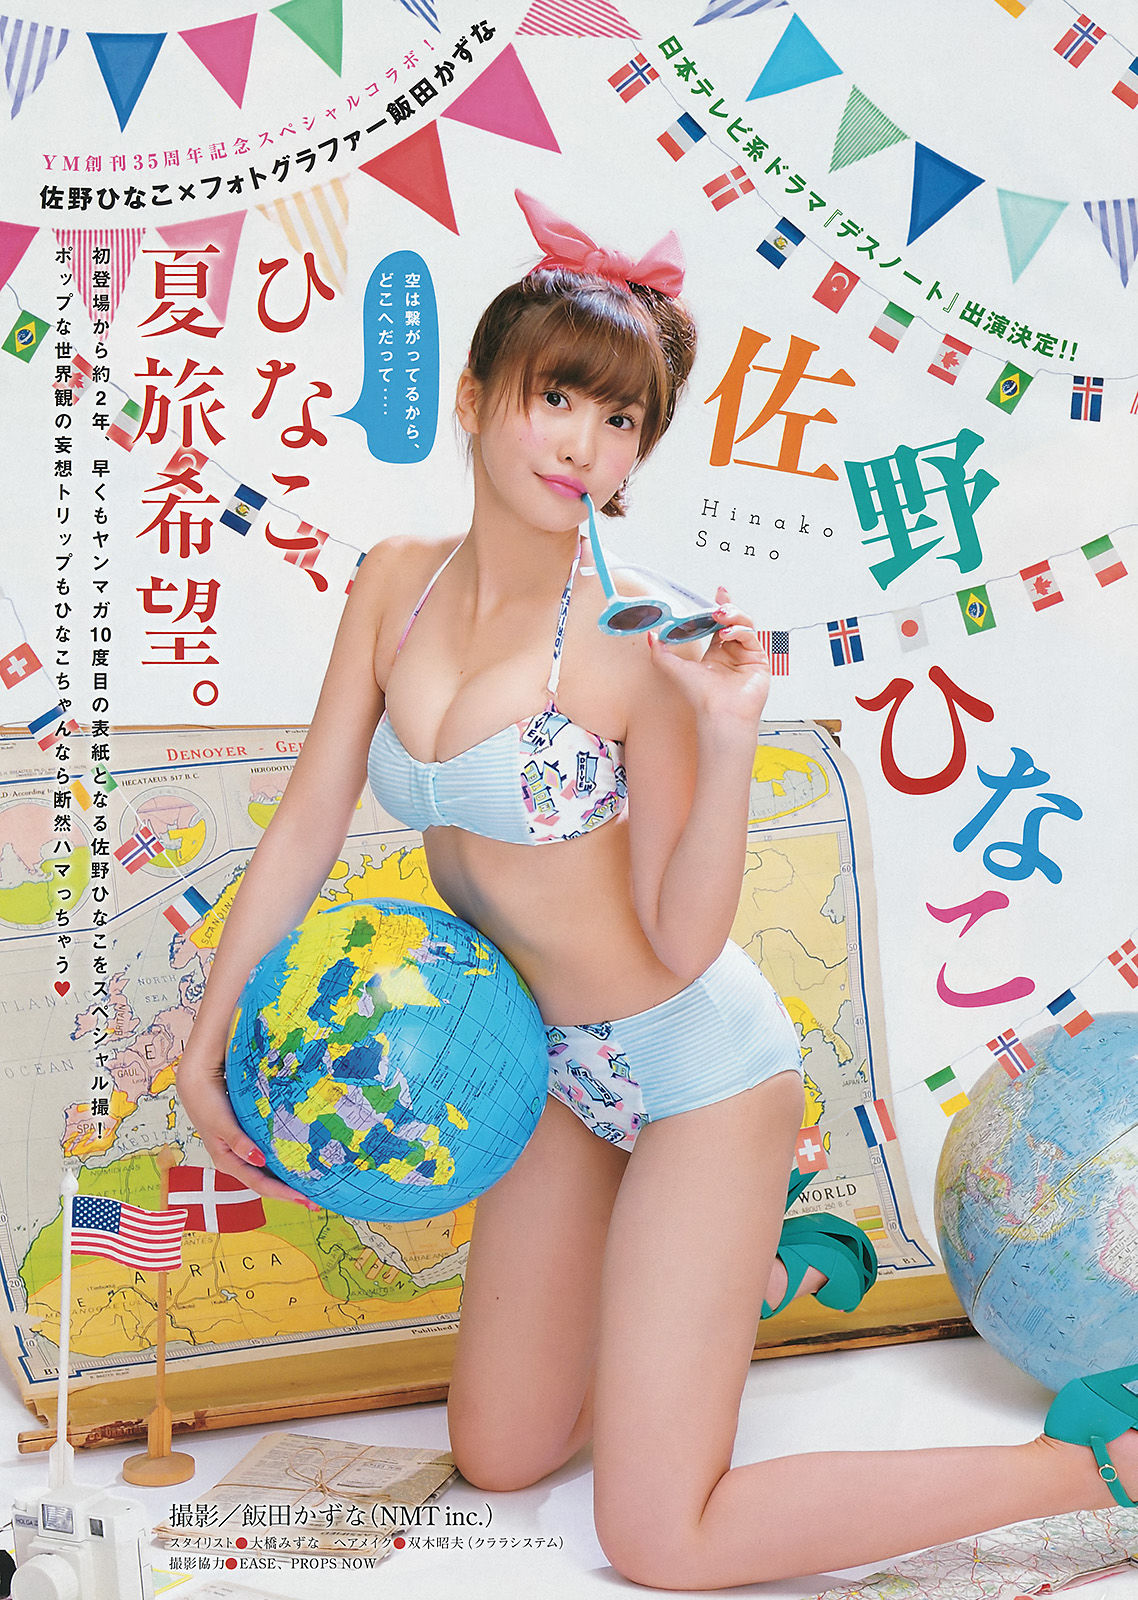 [Young Magazine] 2015年No.28 佐野ひなこ 高崎聖子 横山あみ